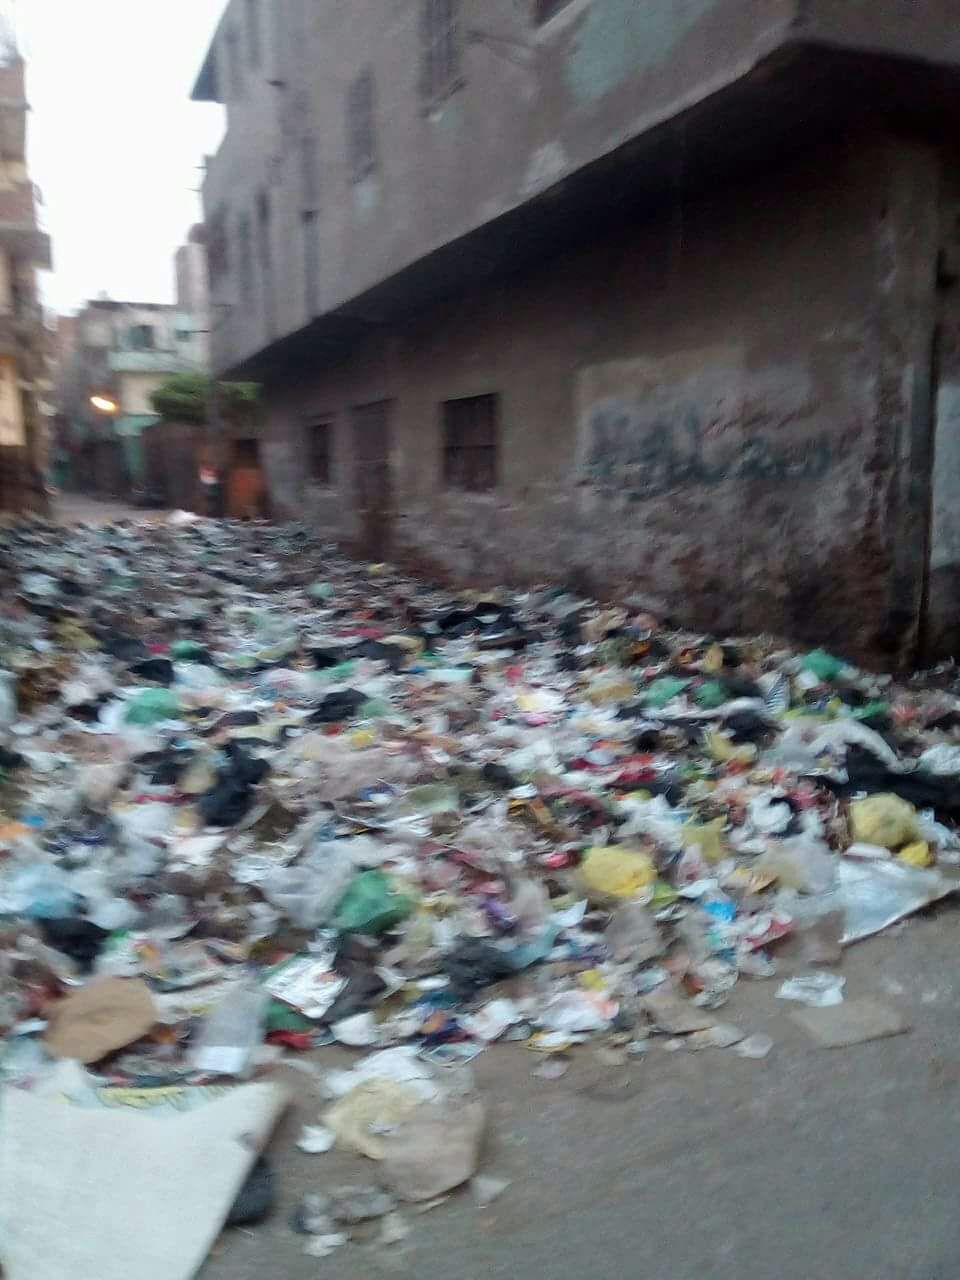 القمامة بجوار الوحدة الصحية بمنطقة الورش (5)